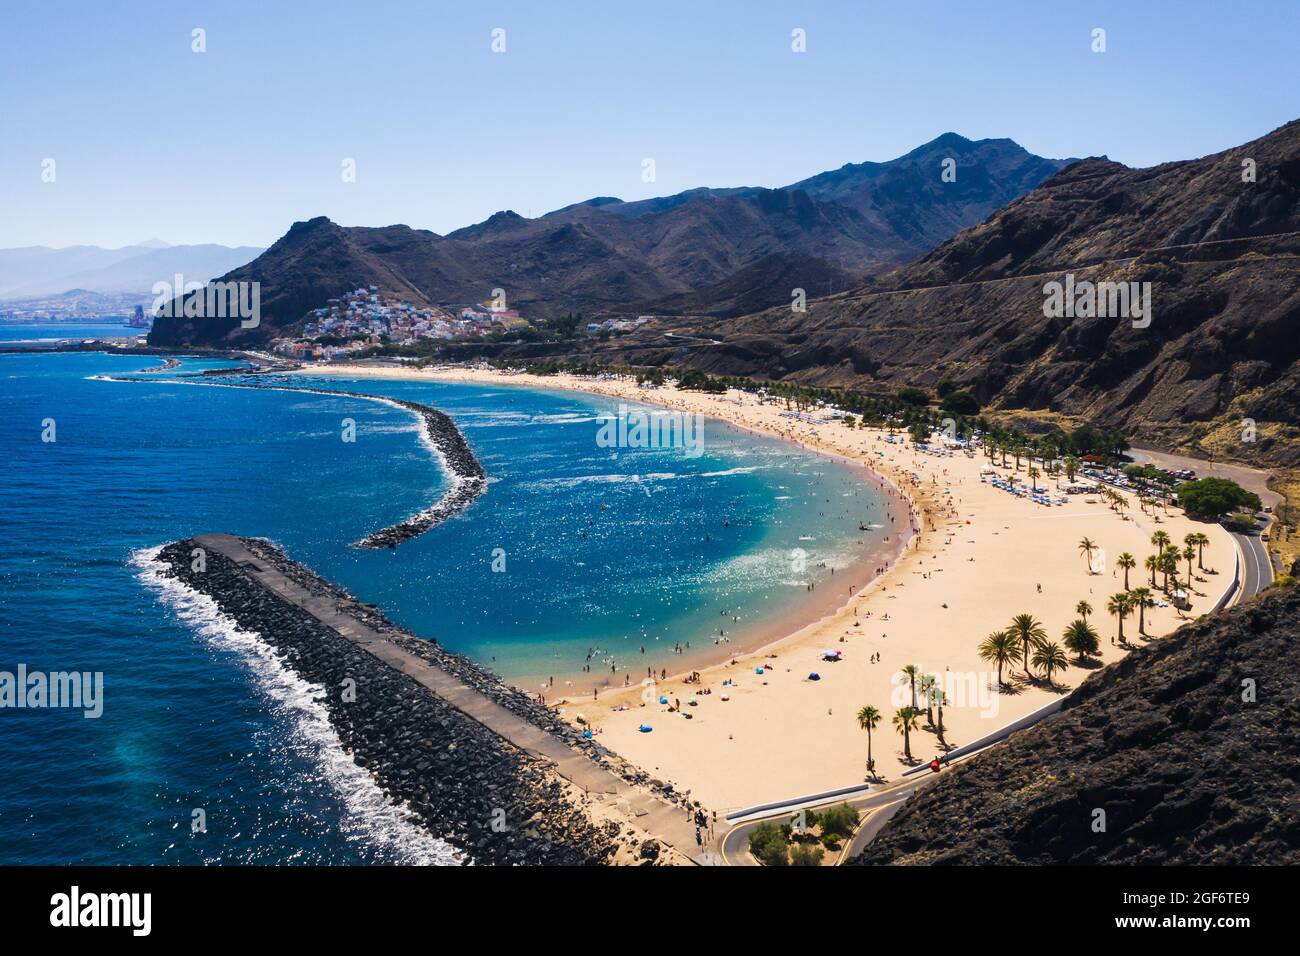 Toller Blick auf den Strand Las Teresitas mit gelbem Sand. Lage: Santa Cruz de Teneriffa, Teneriffa, Kanarische Inseln. Künstlerisches Bild. Beauty-Welt Stockfoto